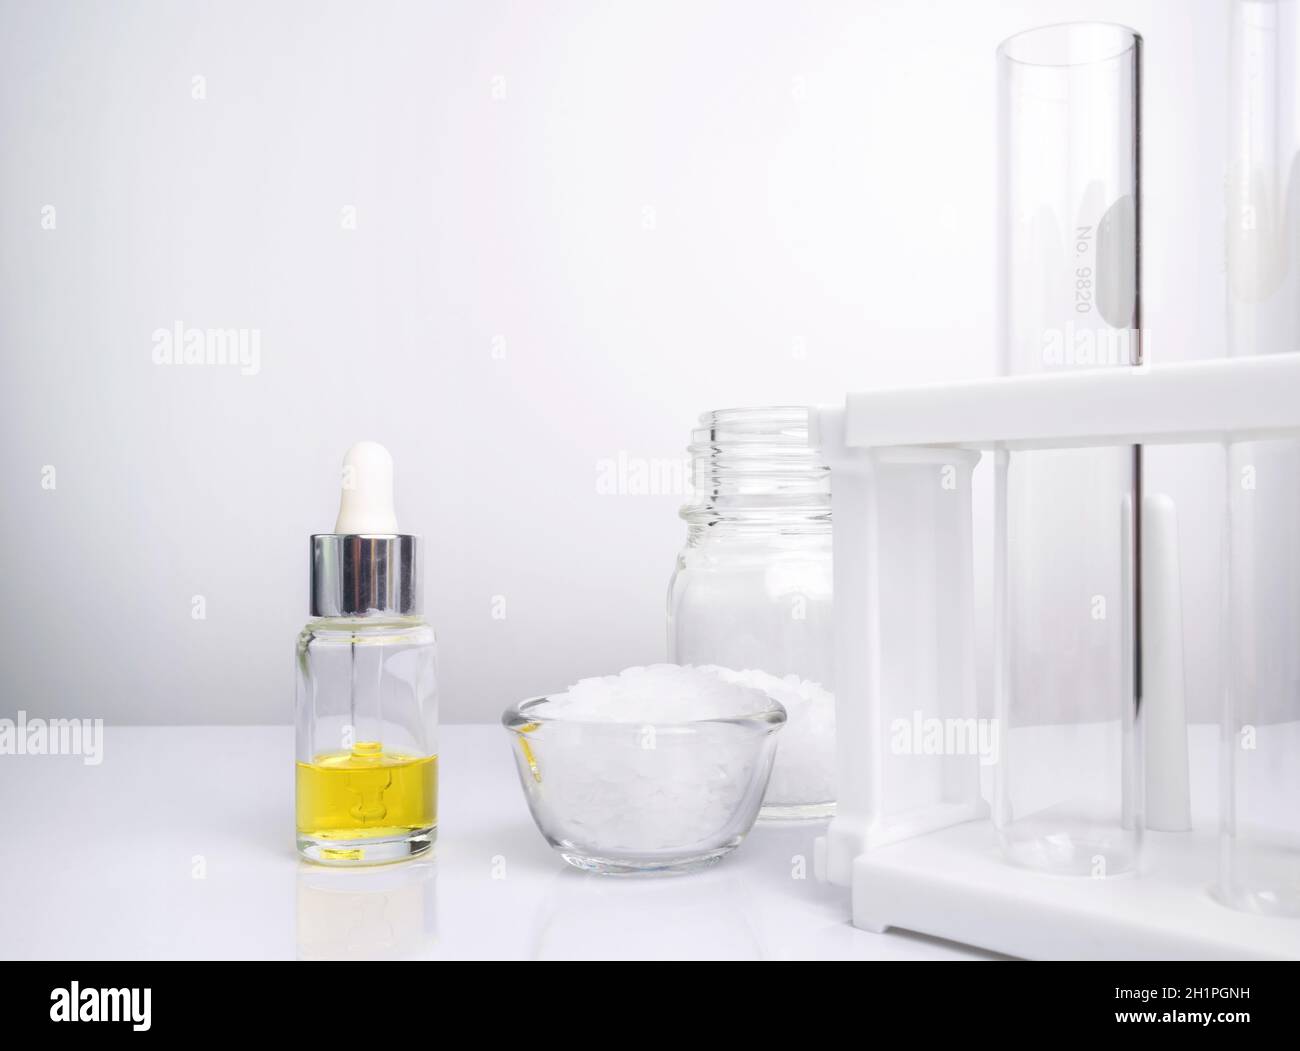 Ingredientes químicos cosméticos sobre mesa blanca de laboratorio. Etanolamina, ácido, alcohol cetílico, Color cosmético amarillo (aceite), cera microcristalina Foto de stock